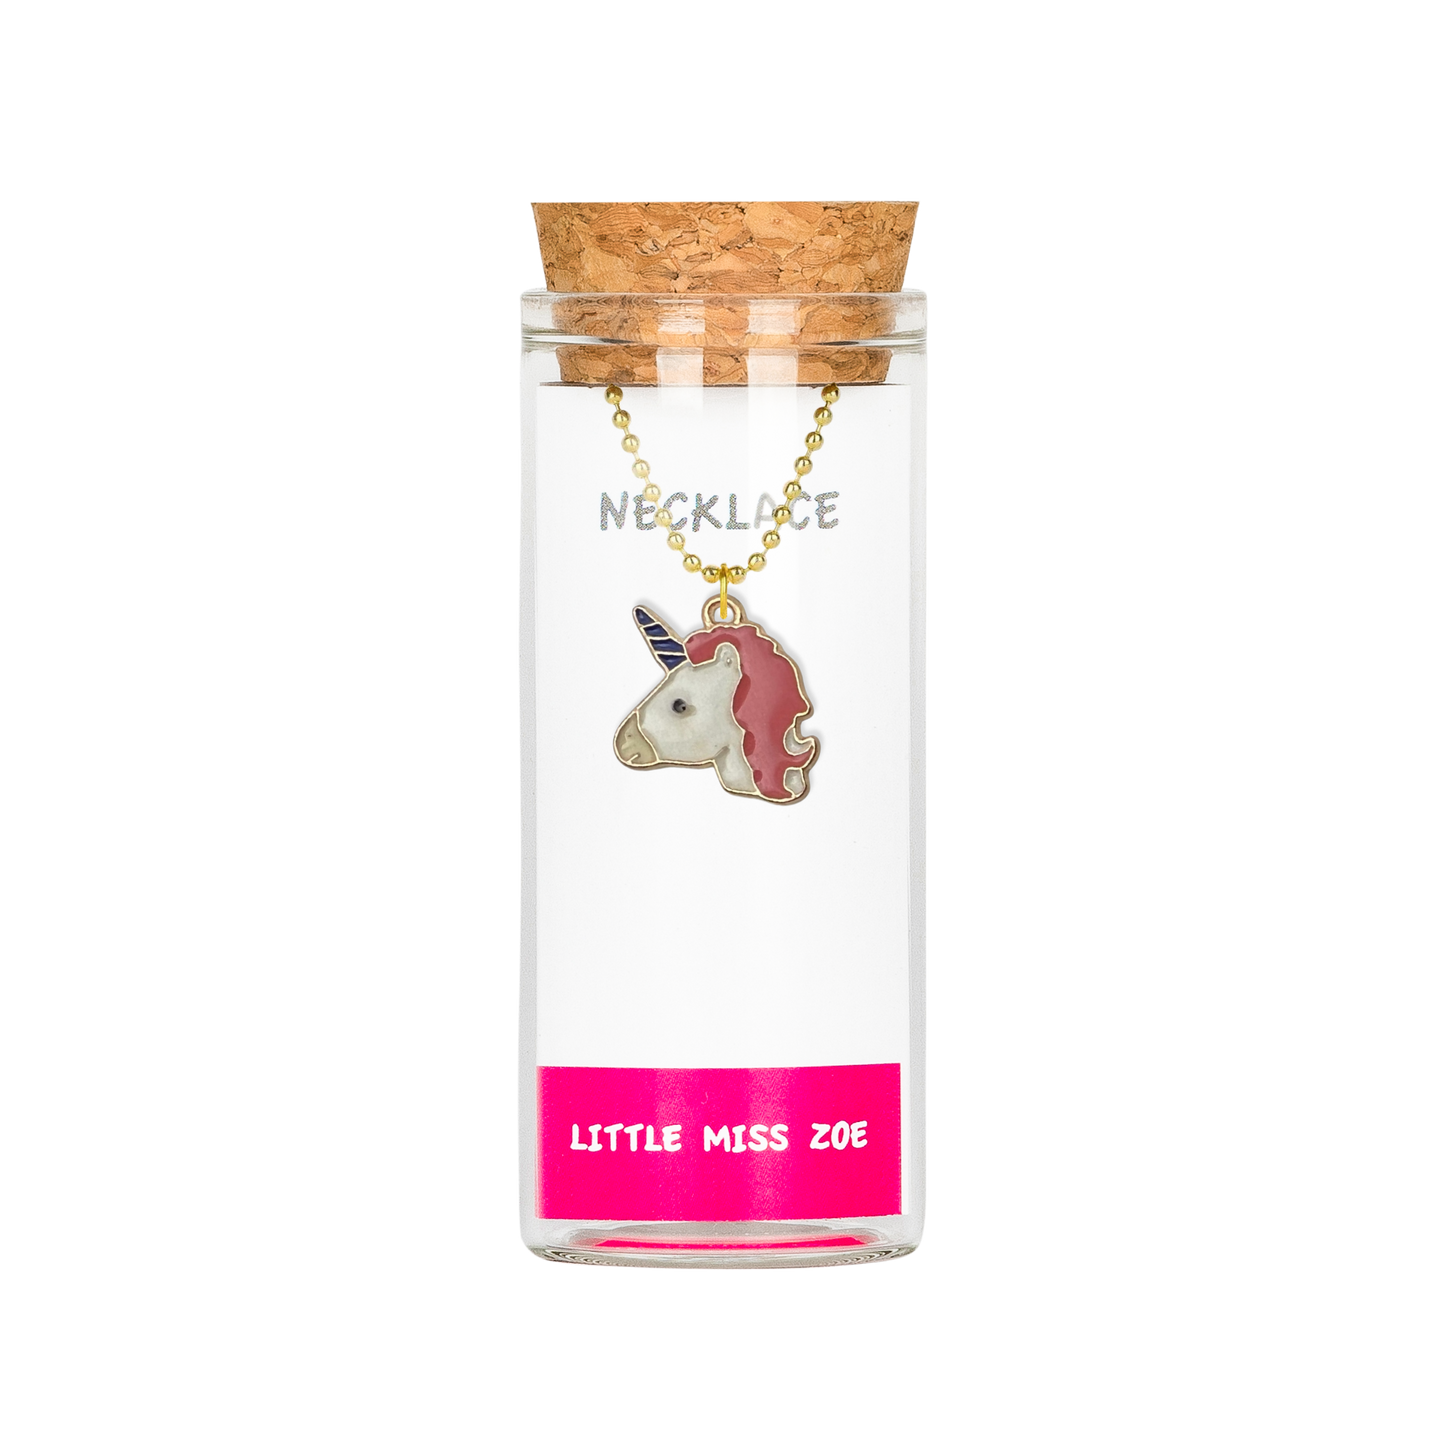 Unicorn Head Necklace in a Bottle